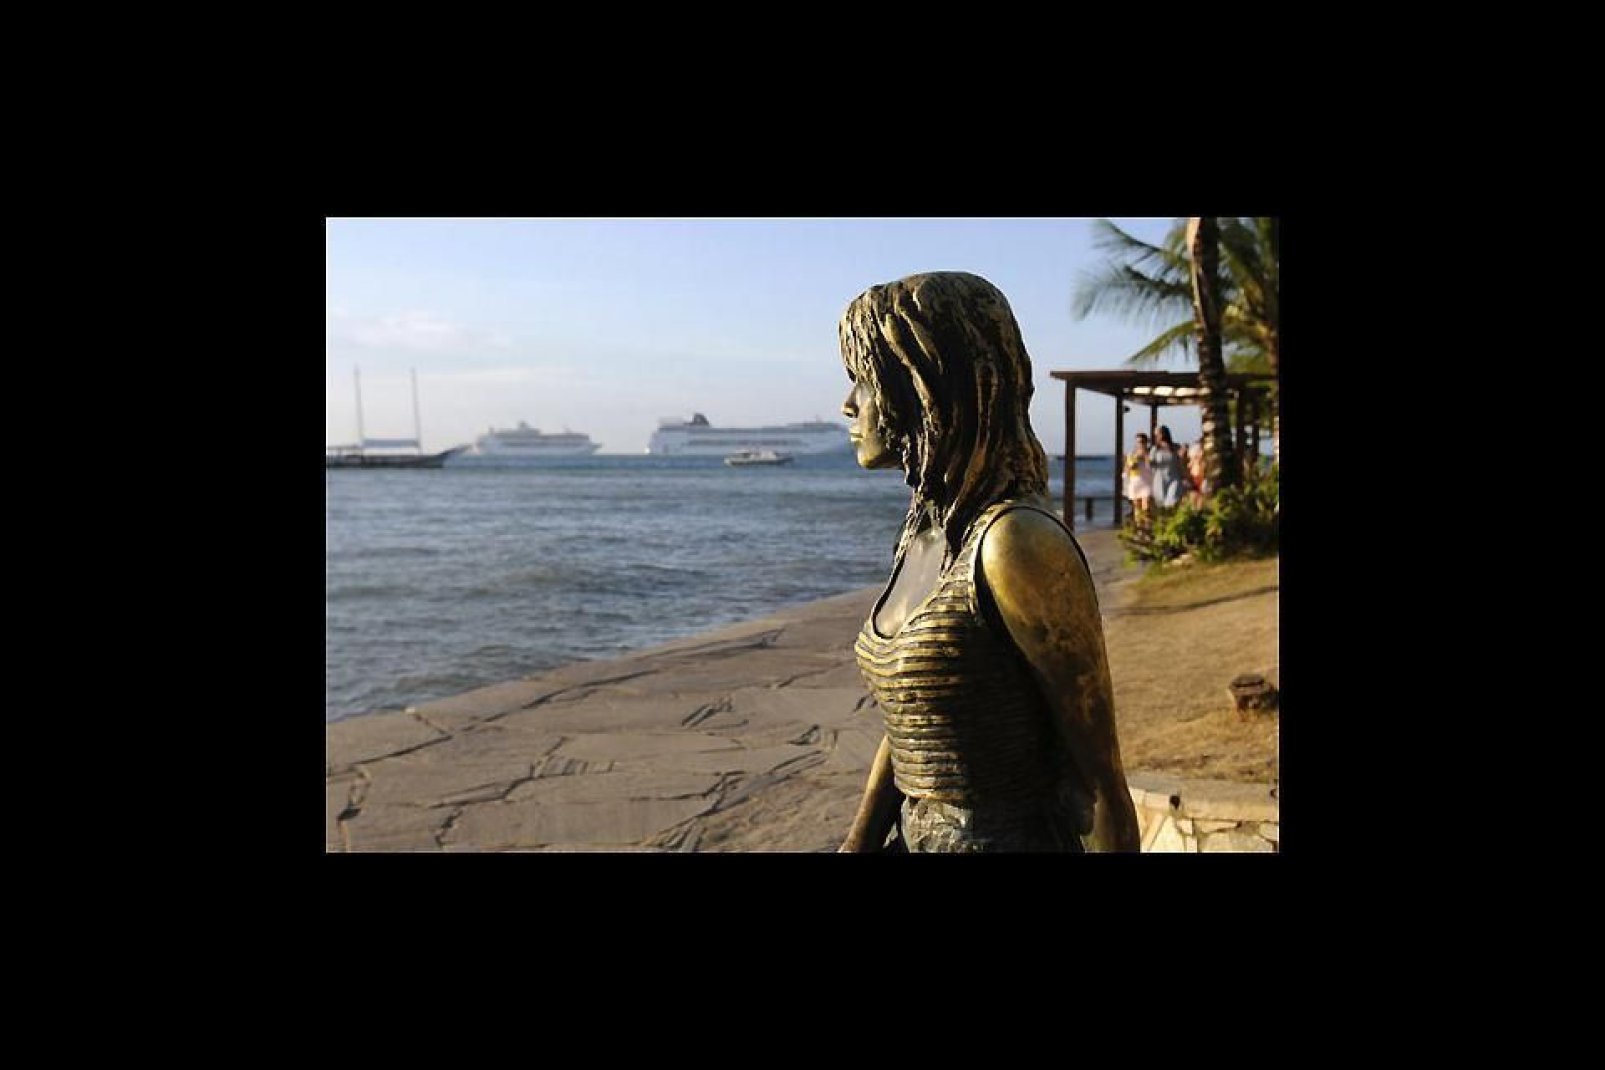 I turisti si accalcano sull'Orla Bardot per farsi fotografare in compagnia della statua di bronzo che rappresenta Brigitte Bardot.